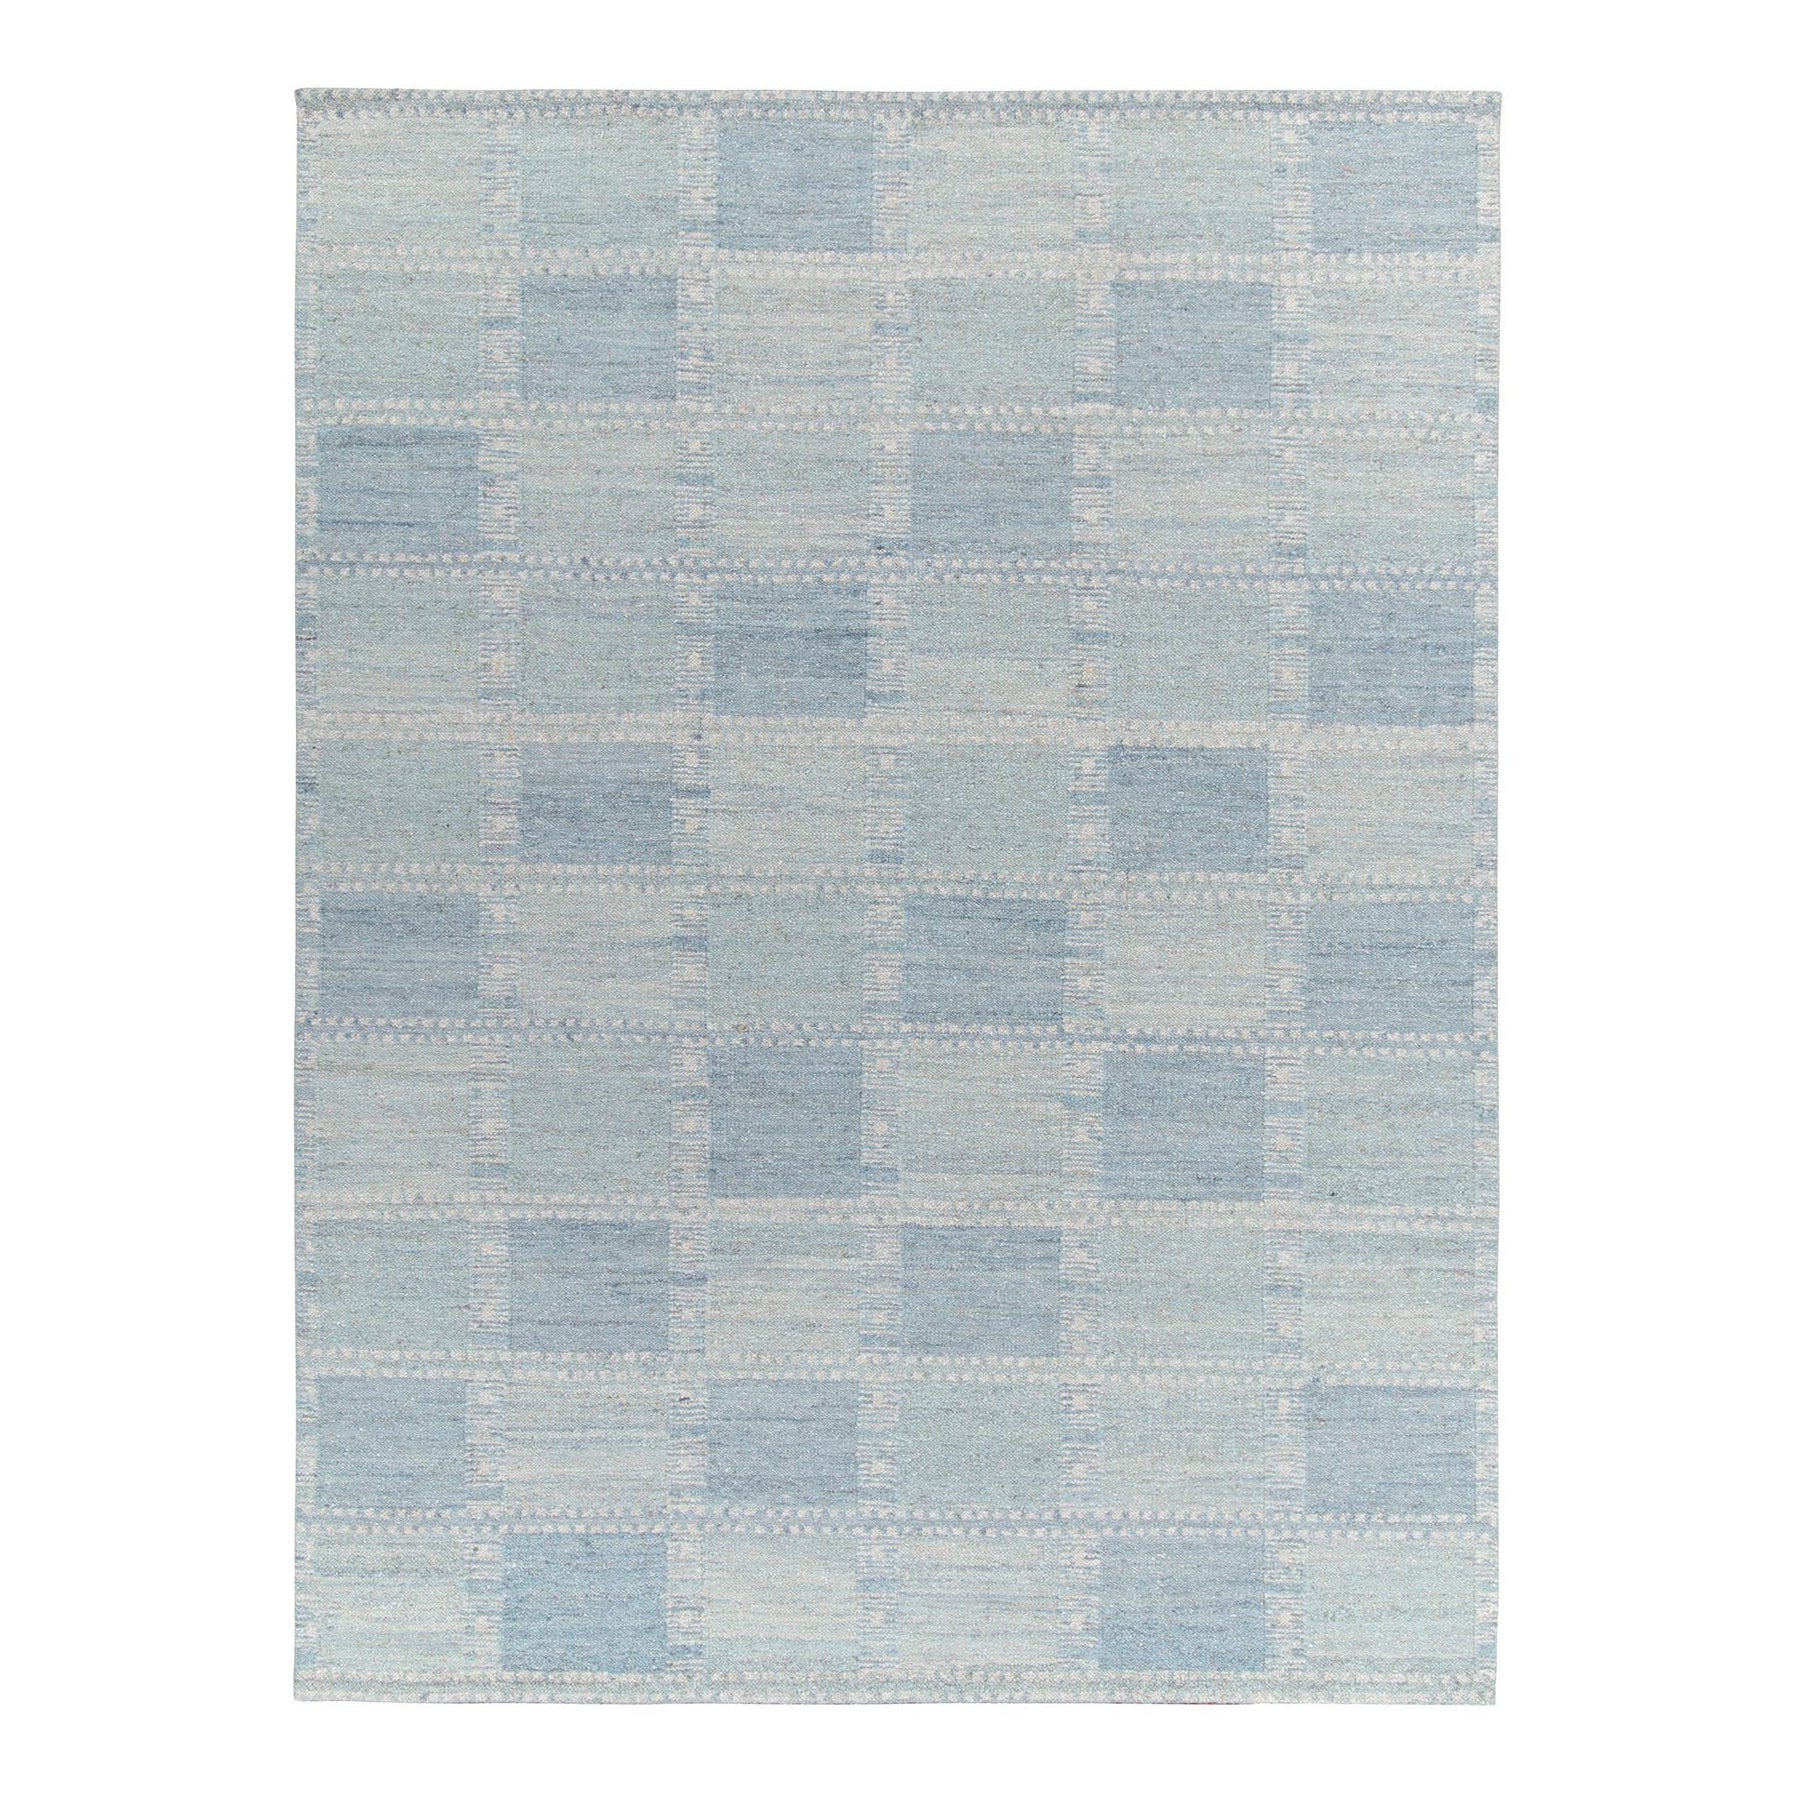 Handgewebtes Flachgewebe-Teppich im skandinavischen Stil mit blauem geometrischem Muster von Rug & Kilim